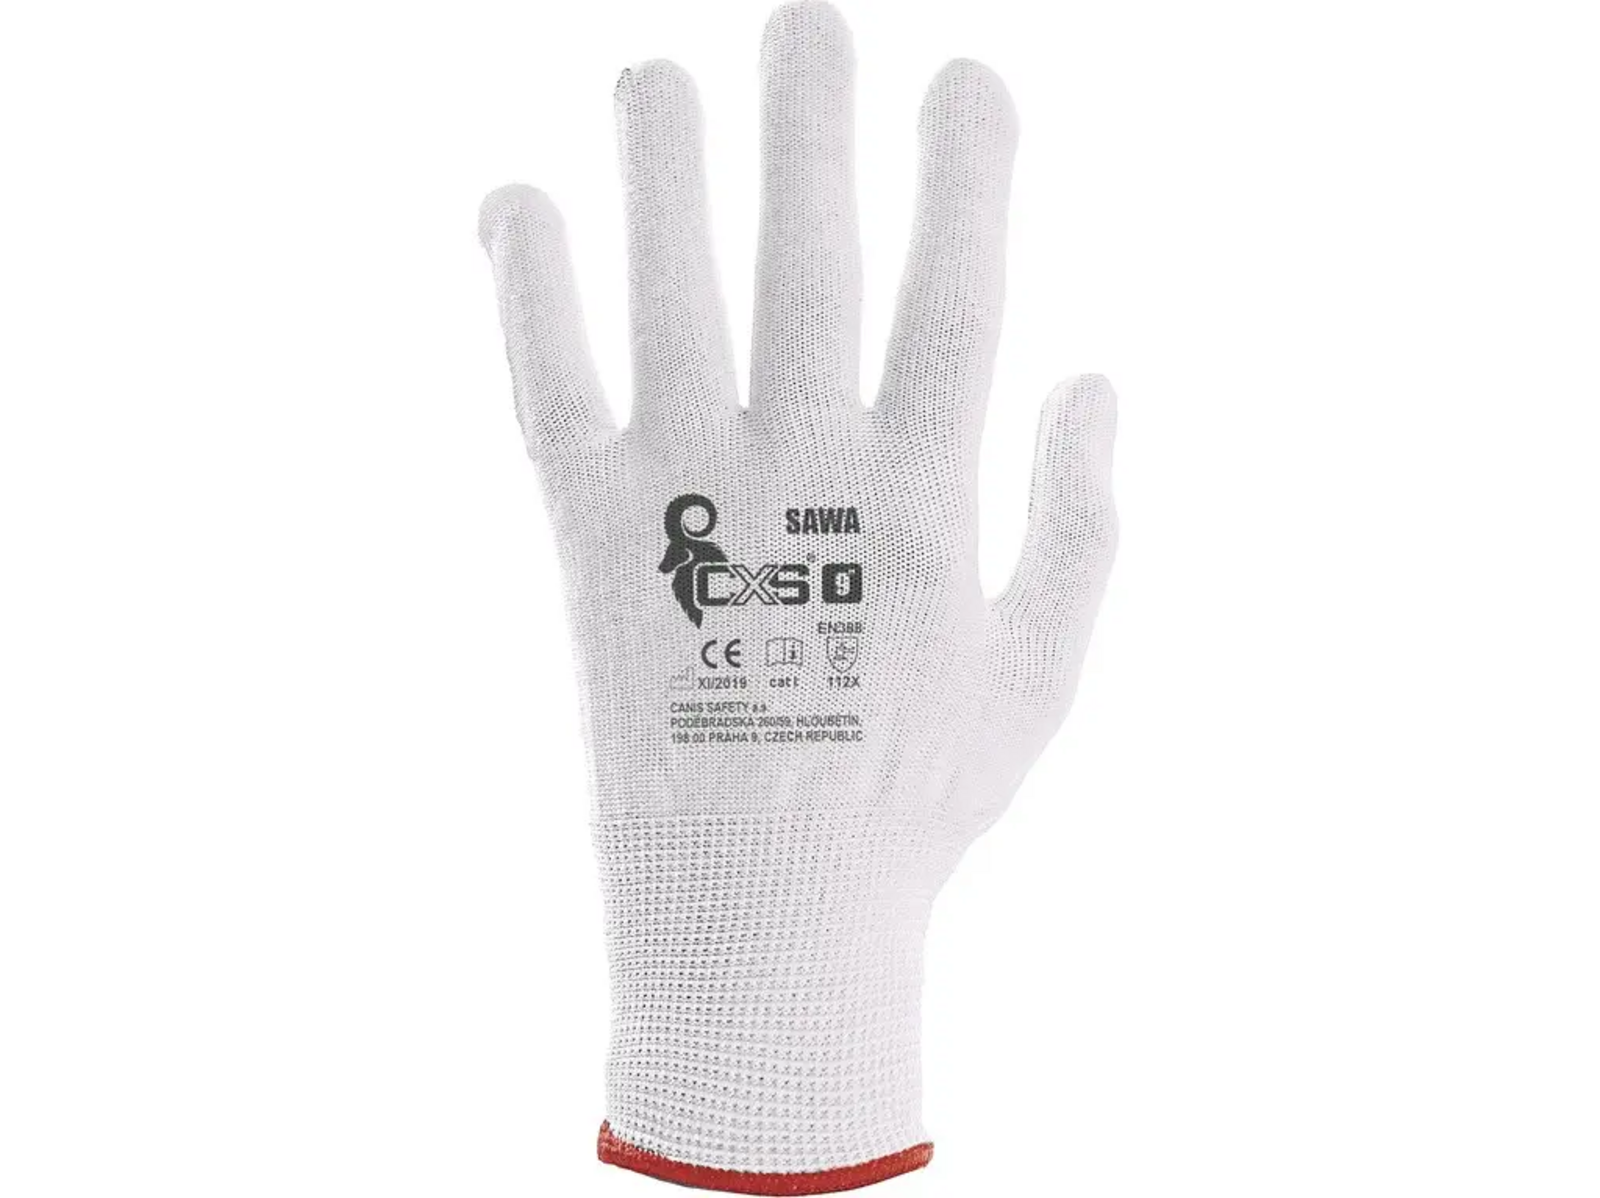 Textilné rukavice CXS Sawa - veľkosť: 7/S, farba: biela